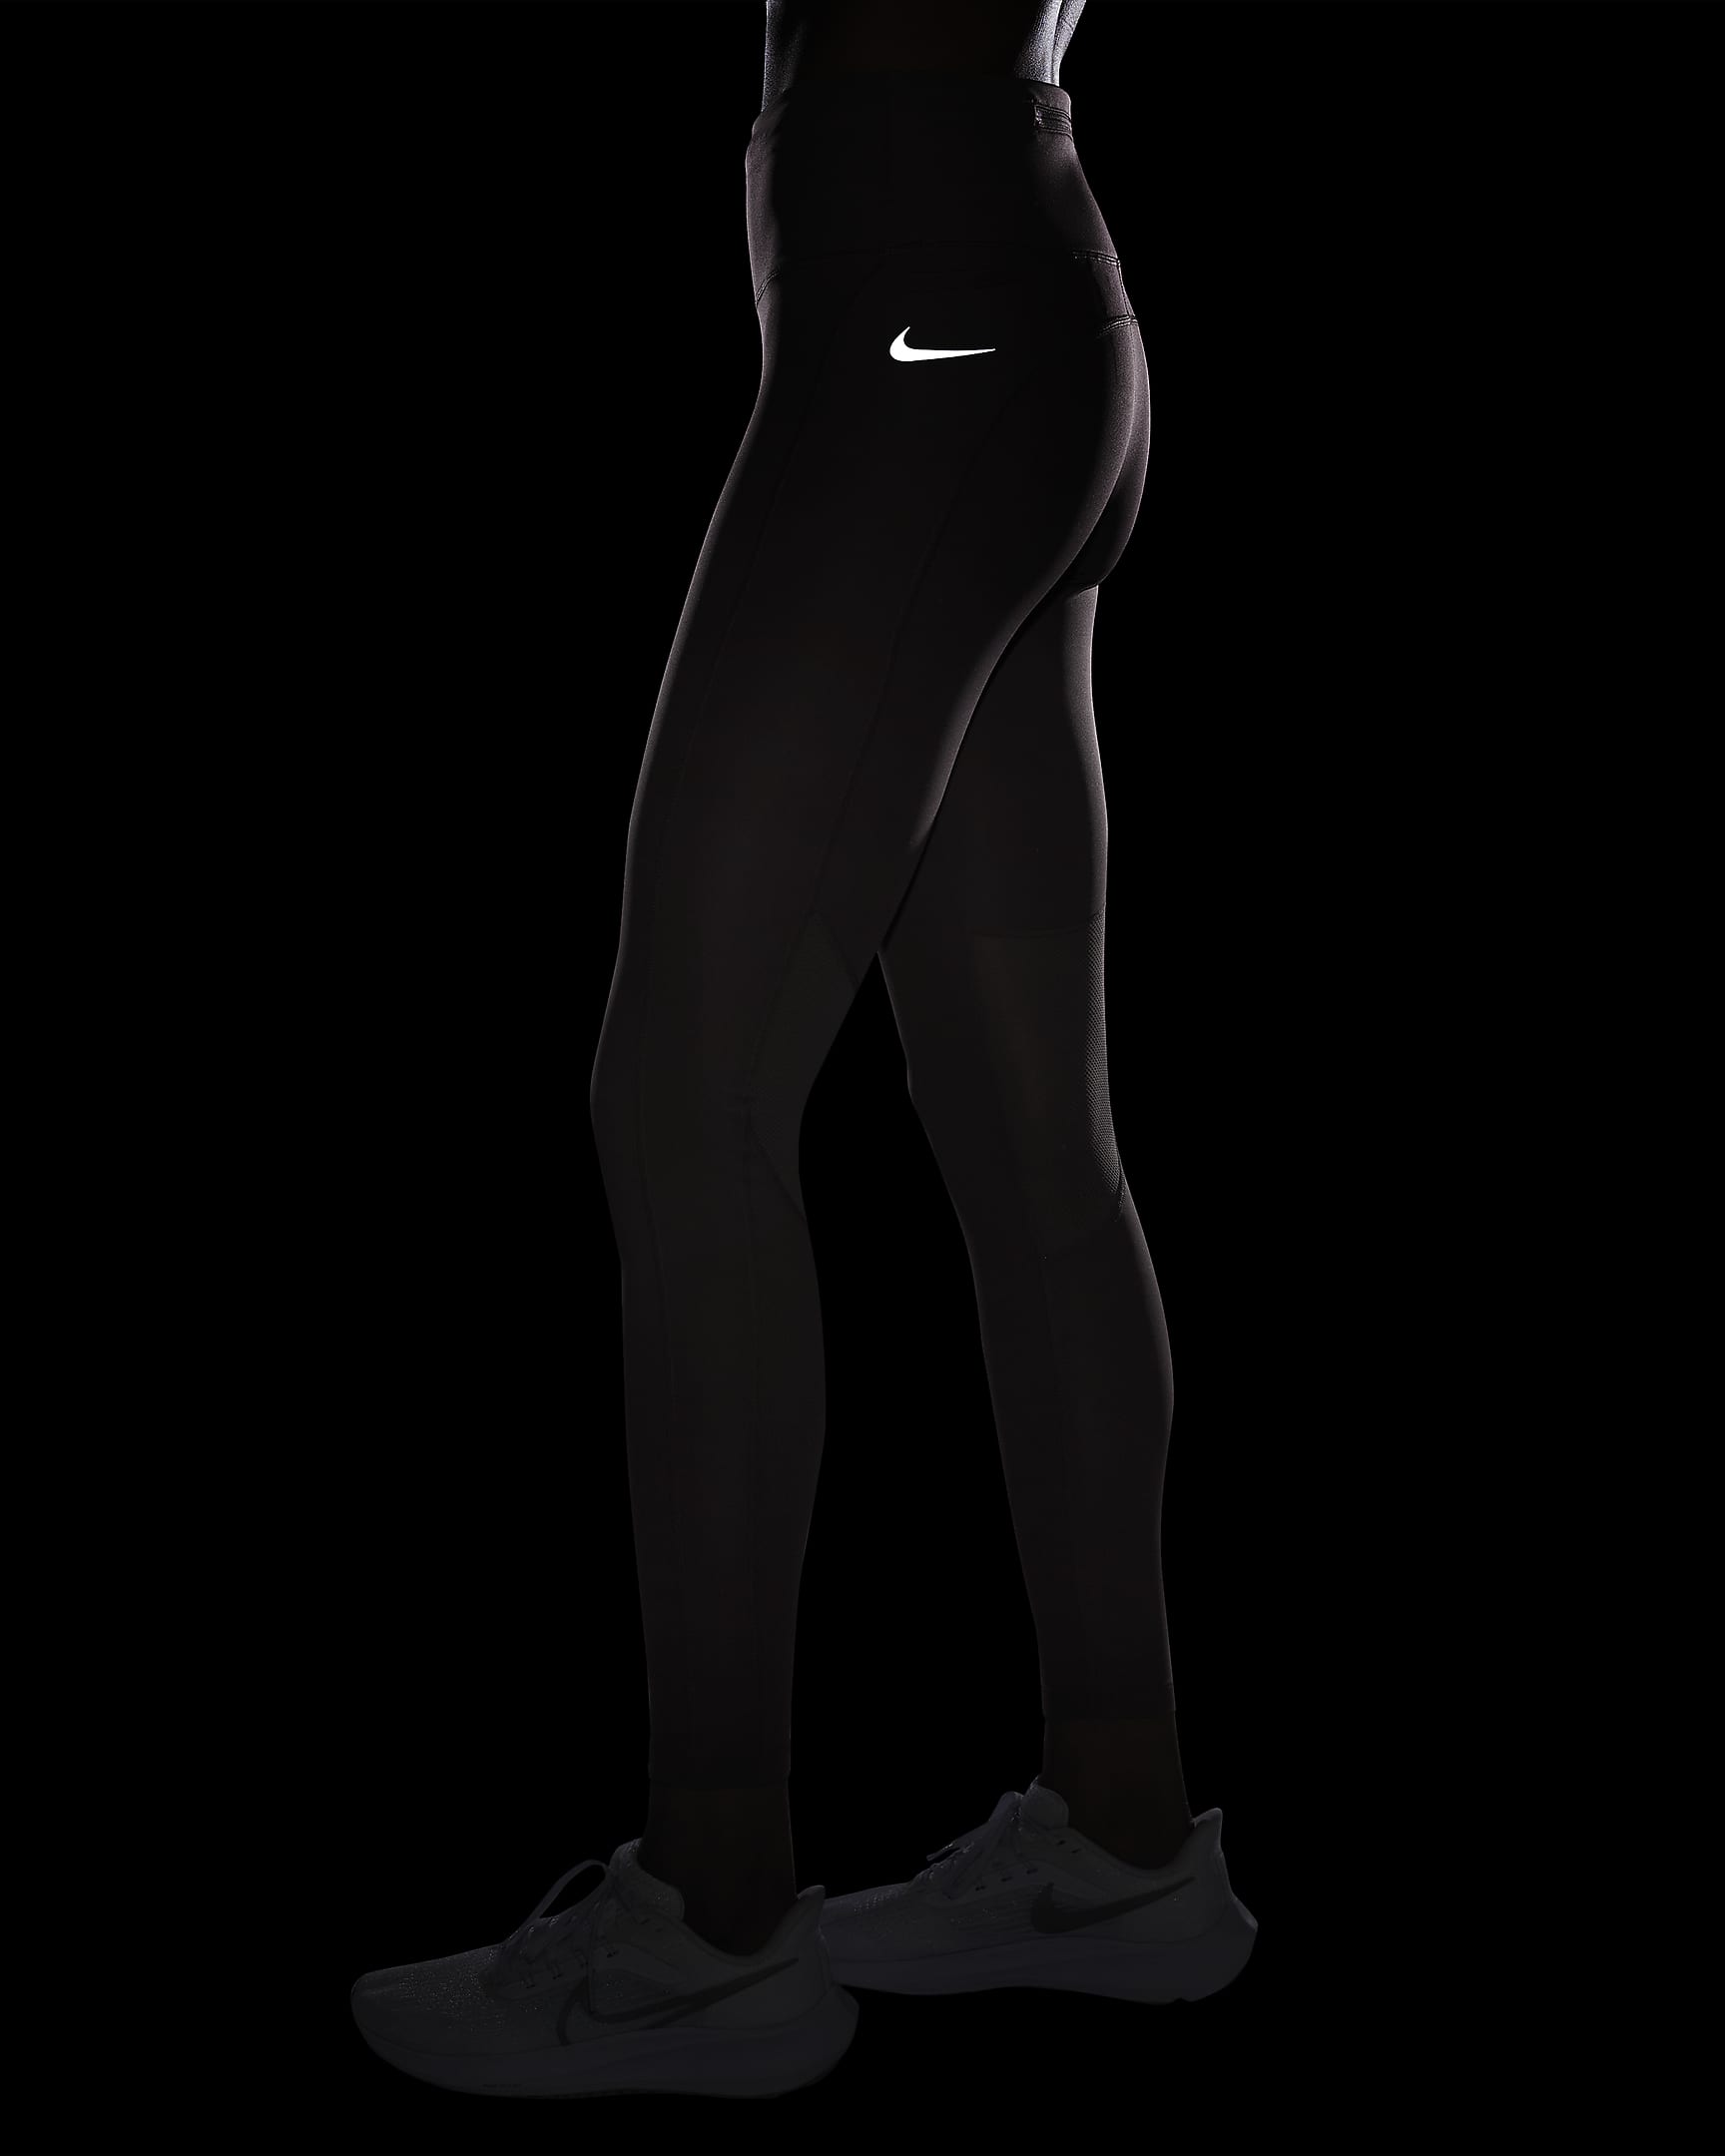 Nike Epic Fast Women's Mid-Rise Pocket Running Leggings. Nike UK